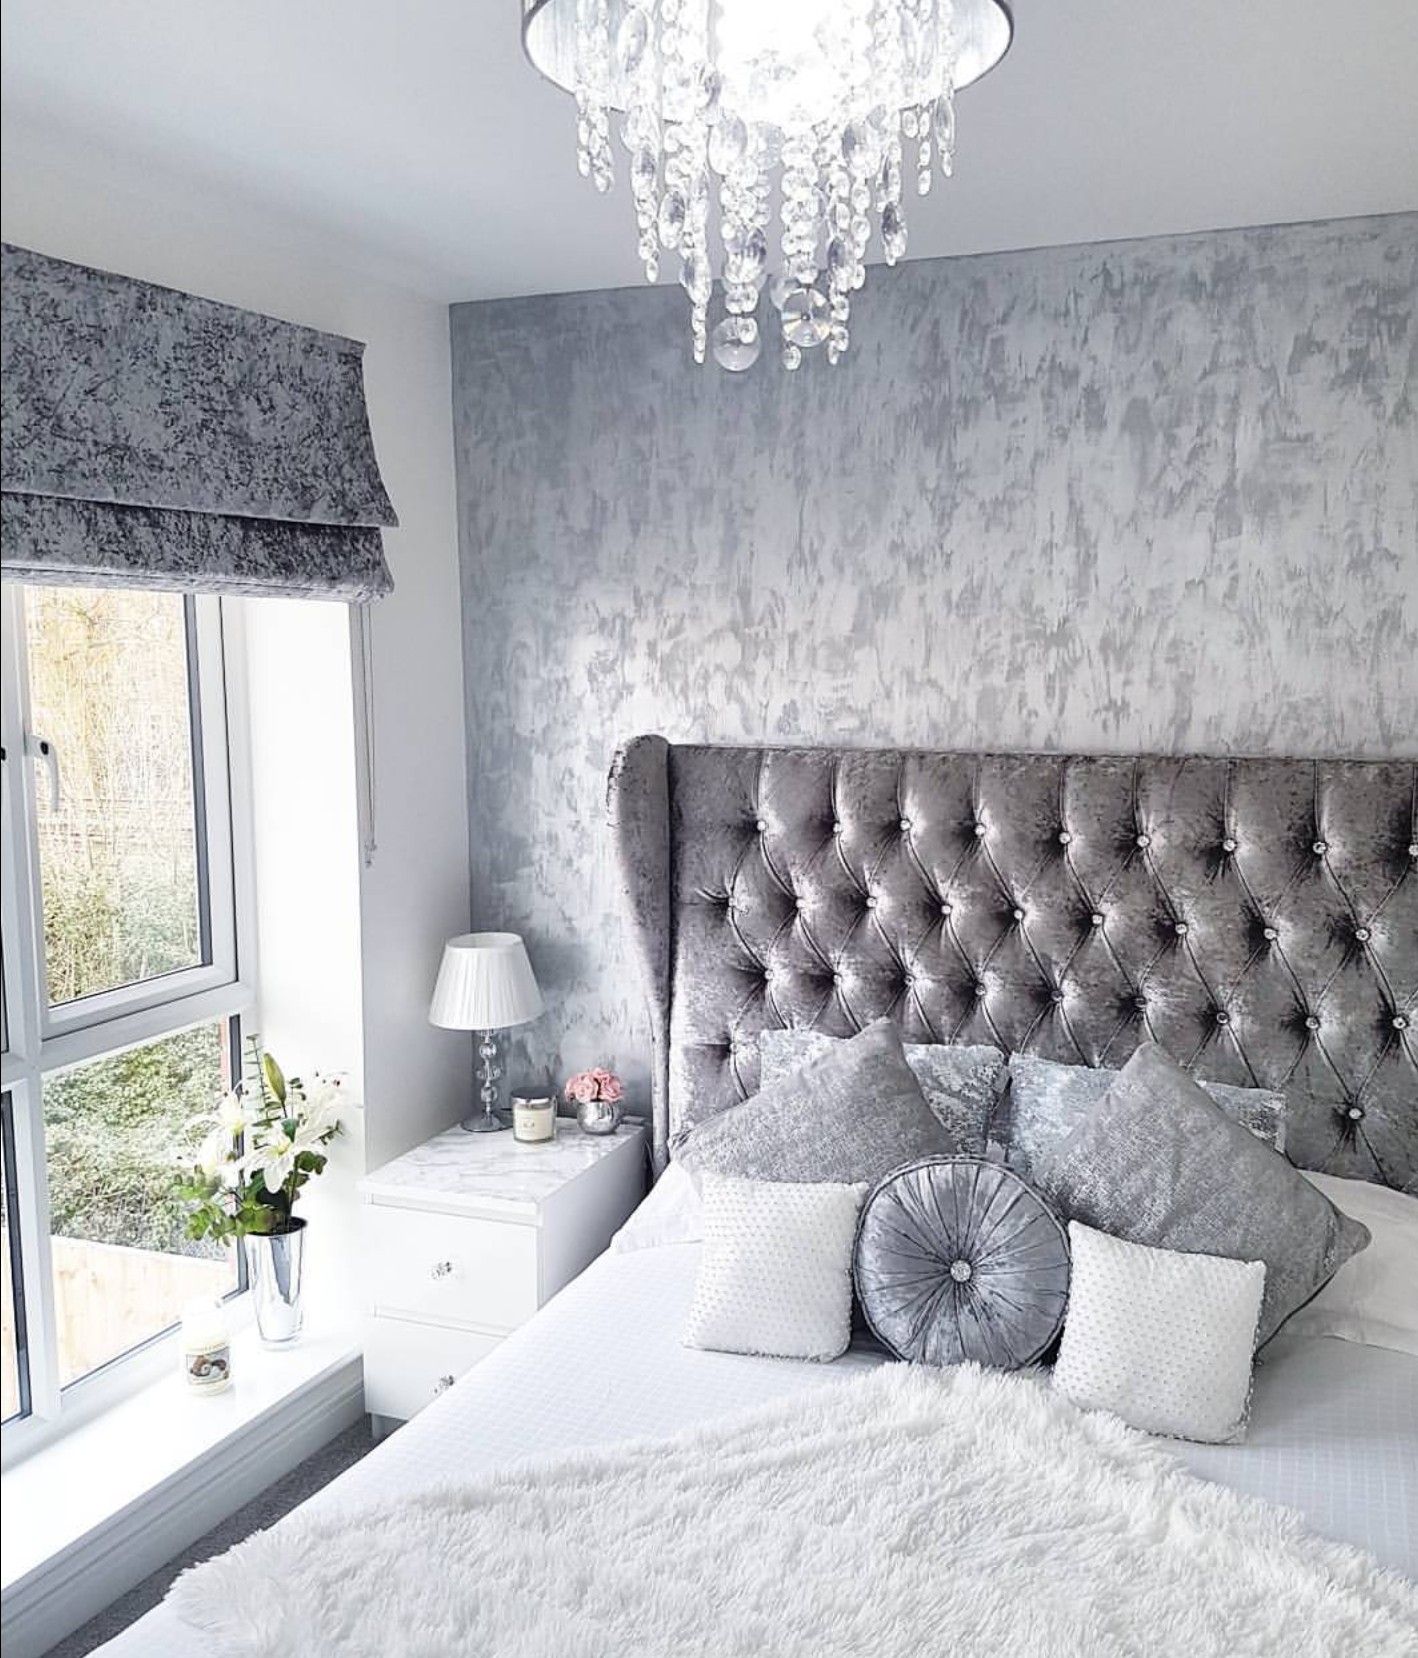 wallpaper design for bedroom,room,furniture,white,interior design,bedroom